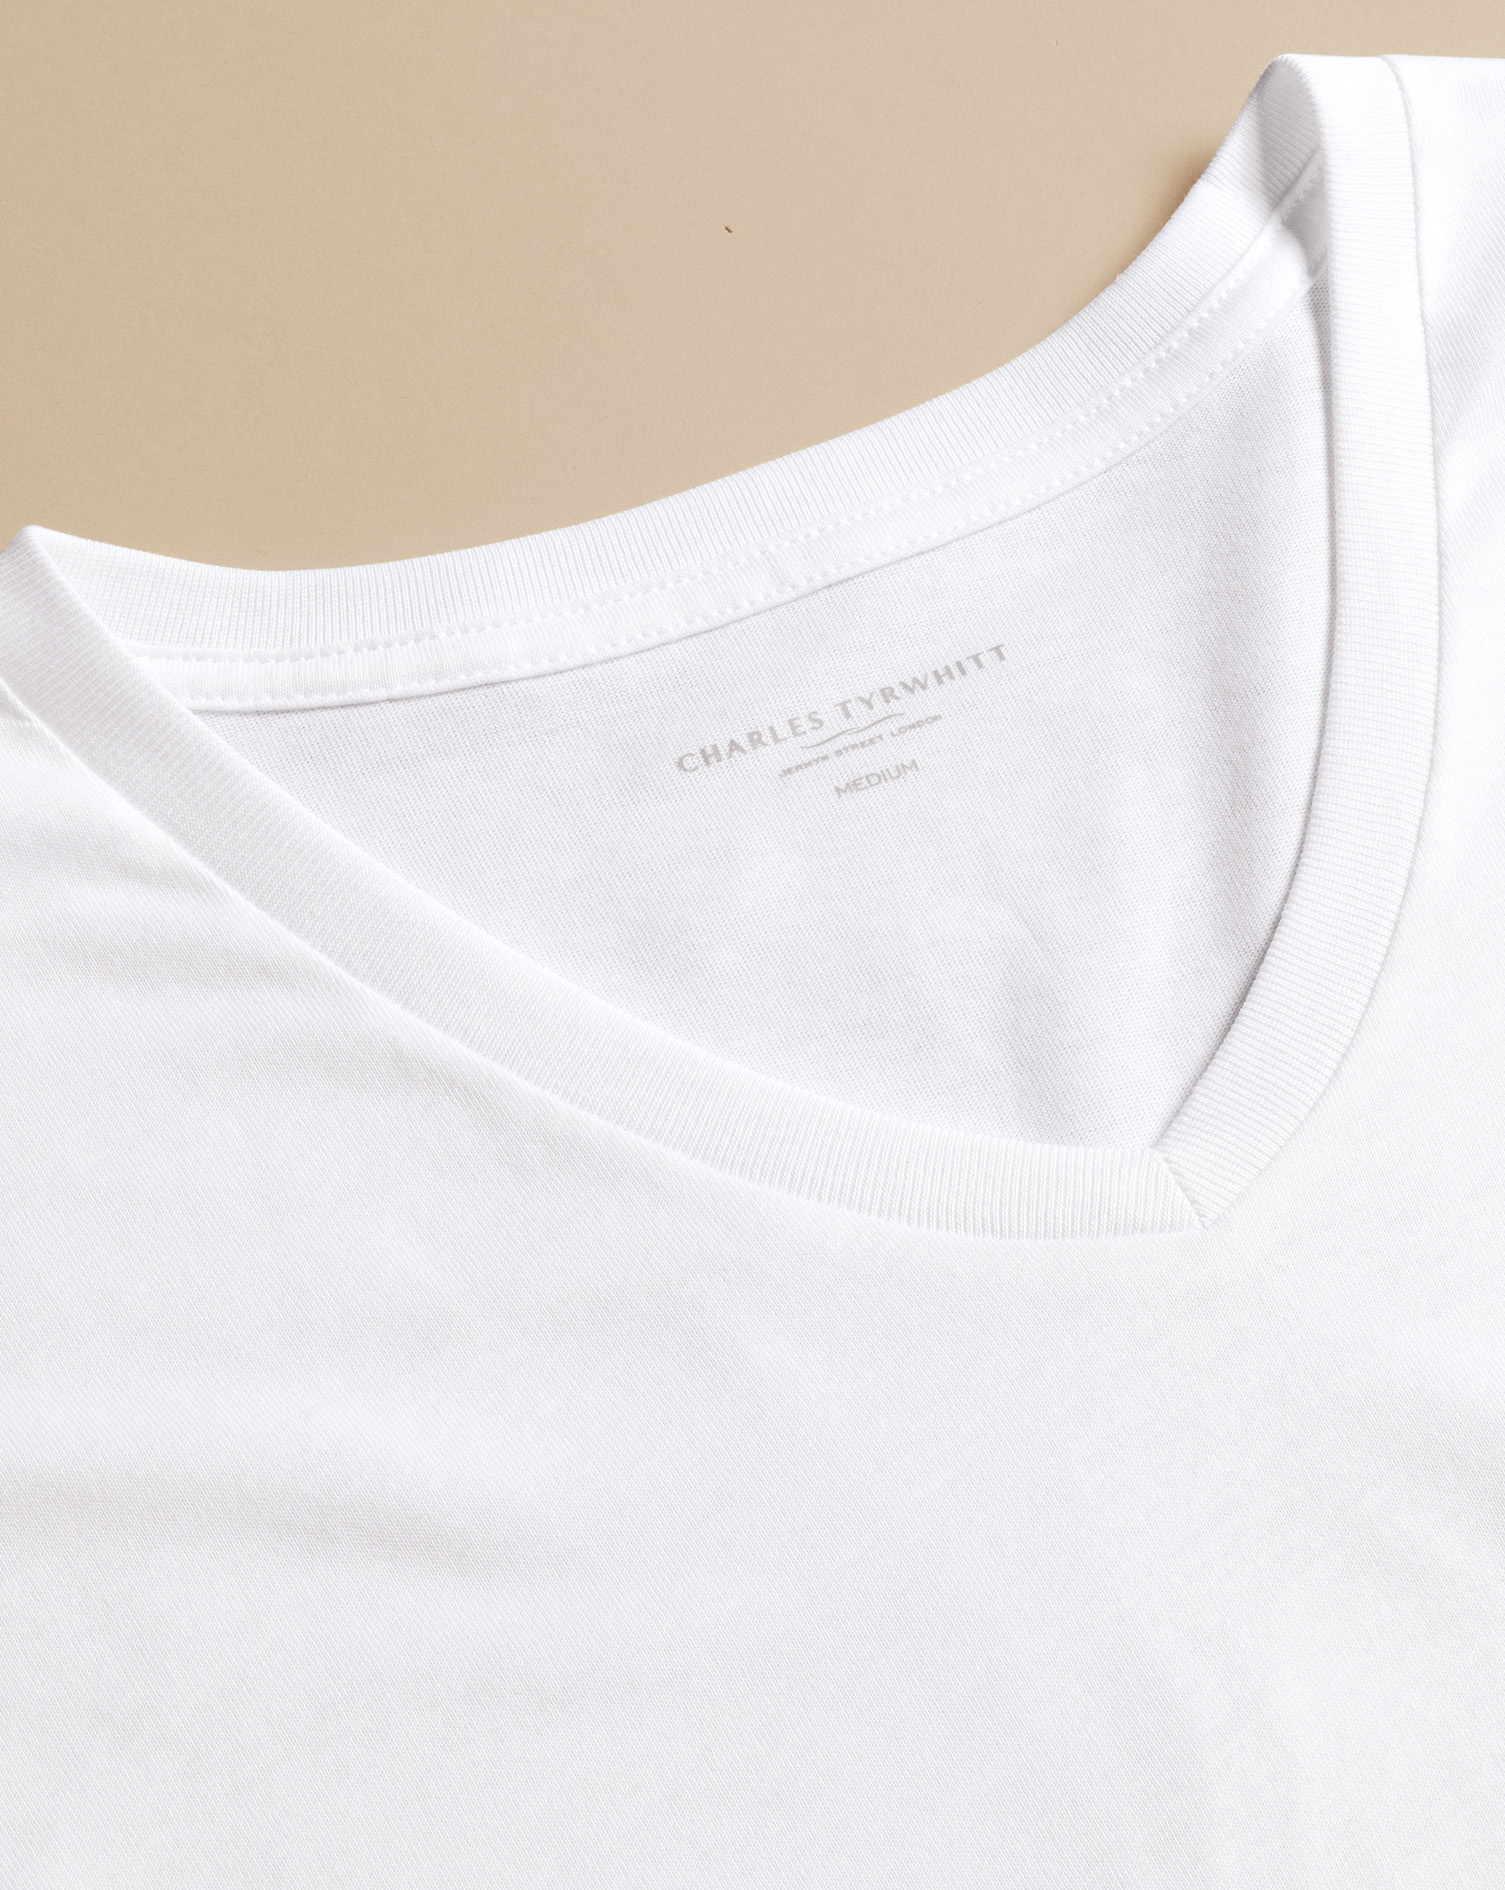 Men's Charles Tyrwhitt 2 Pack V-Neck T-Shirt - White Size Medium Cotton
